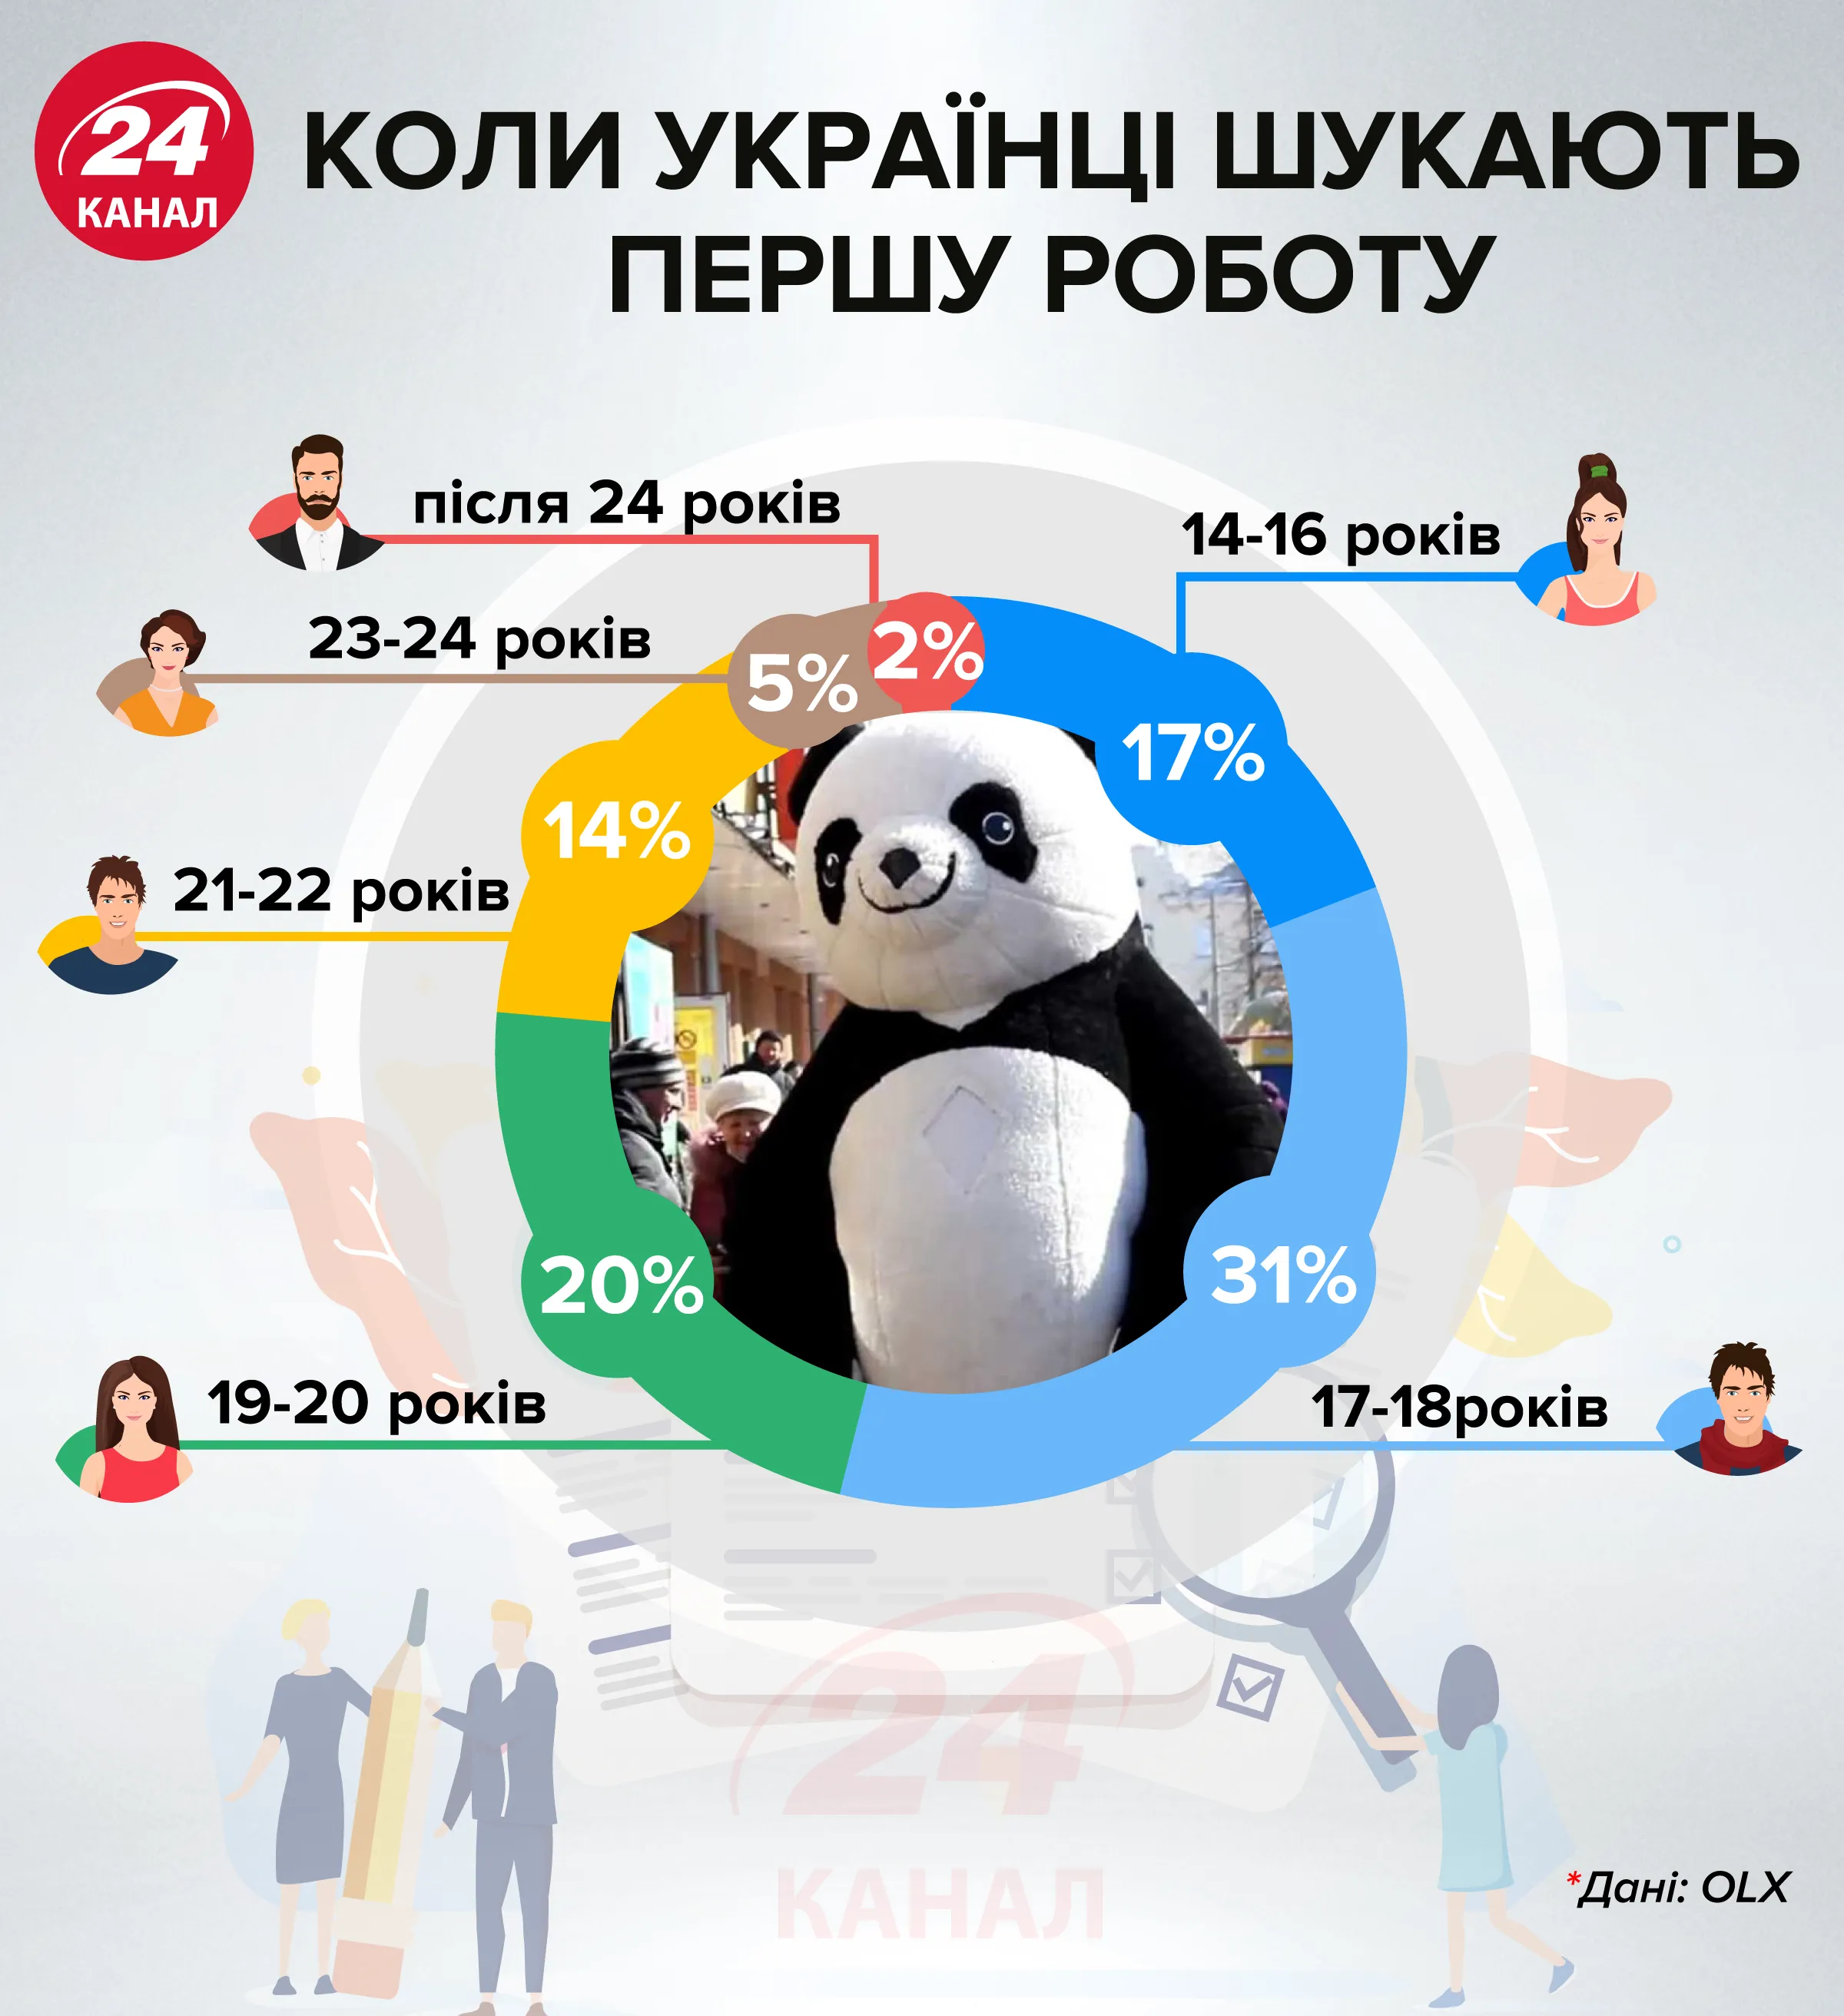 Когда украинцы ищут первую работу инфографика 24 канал